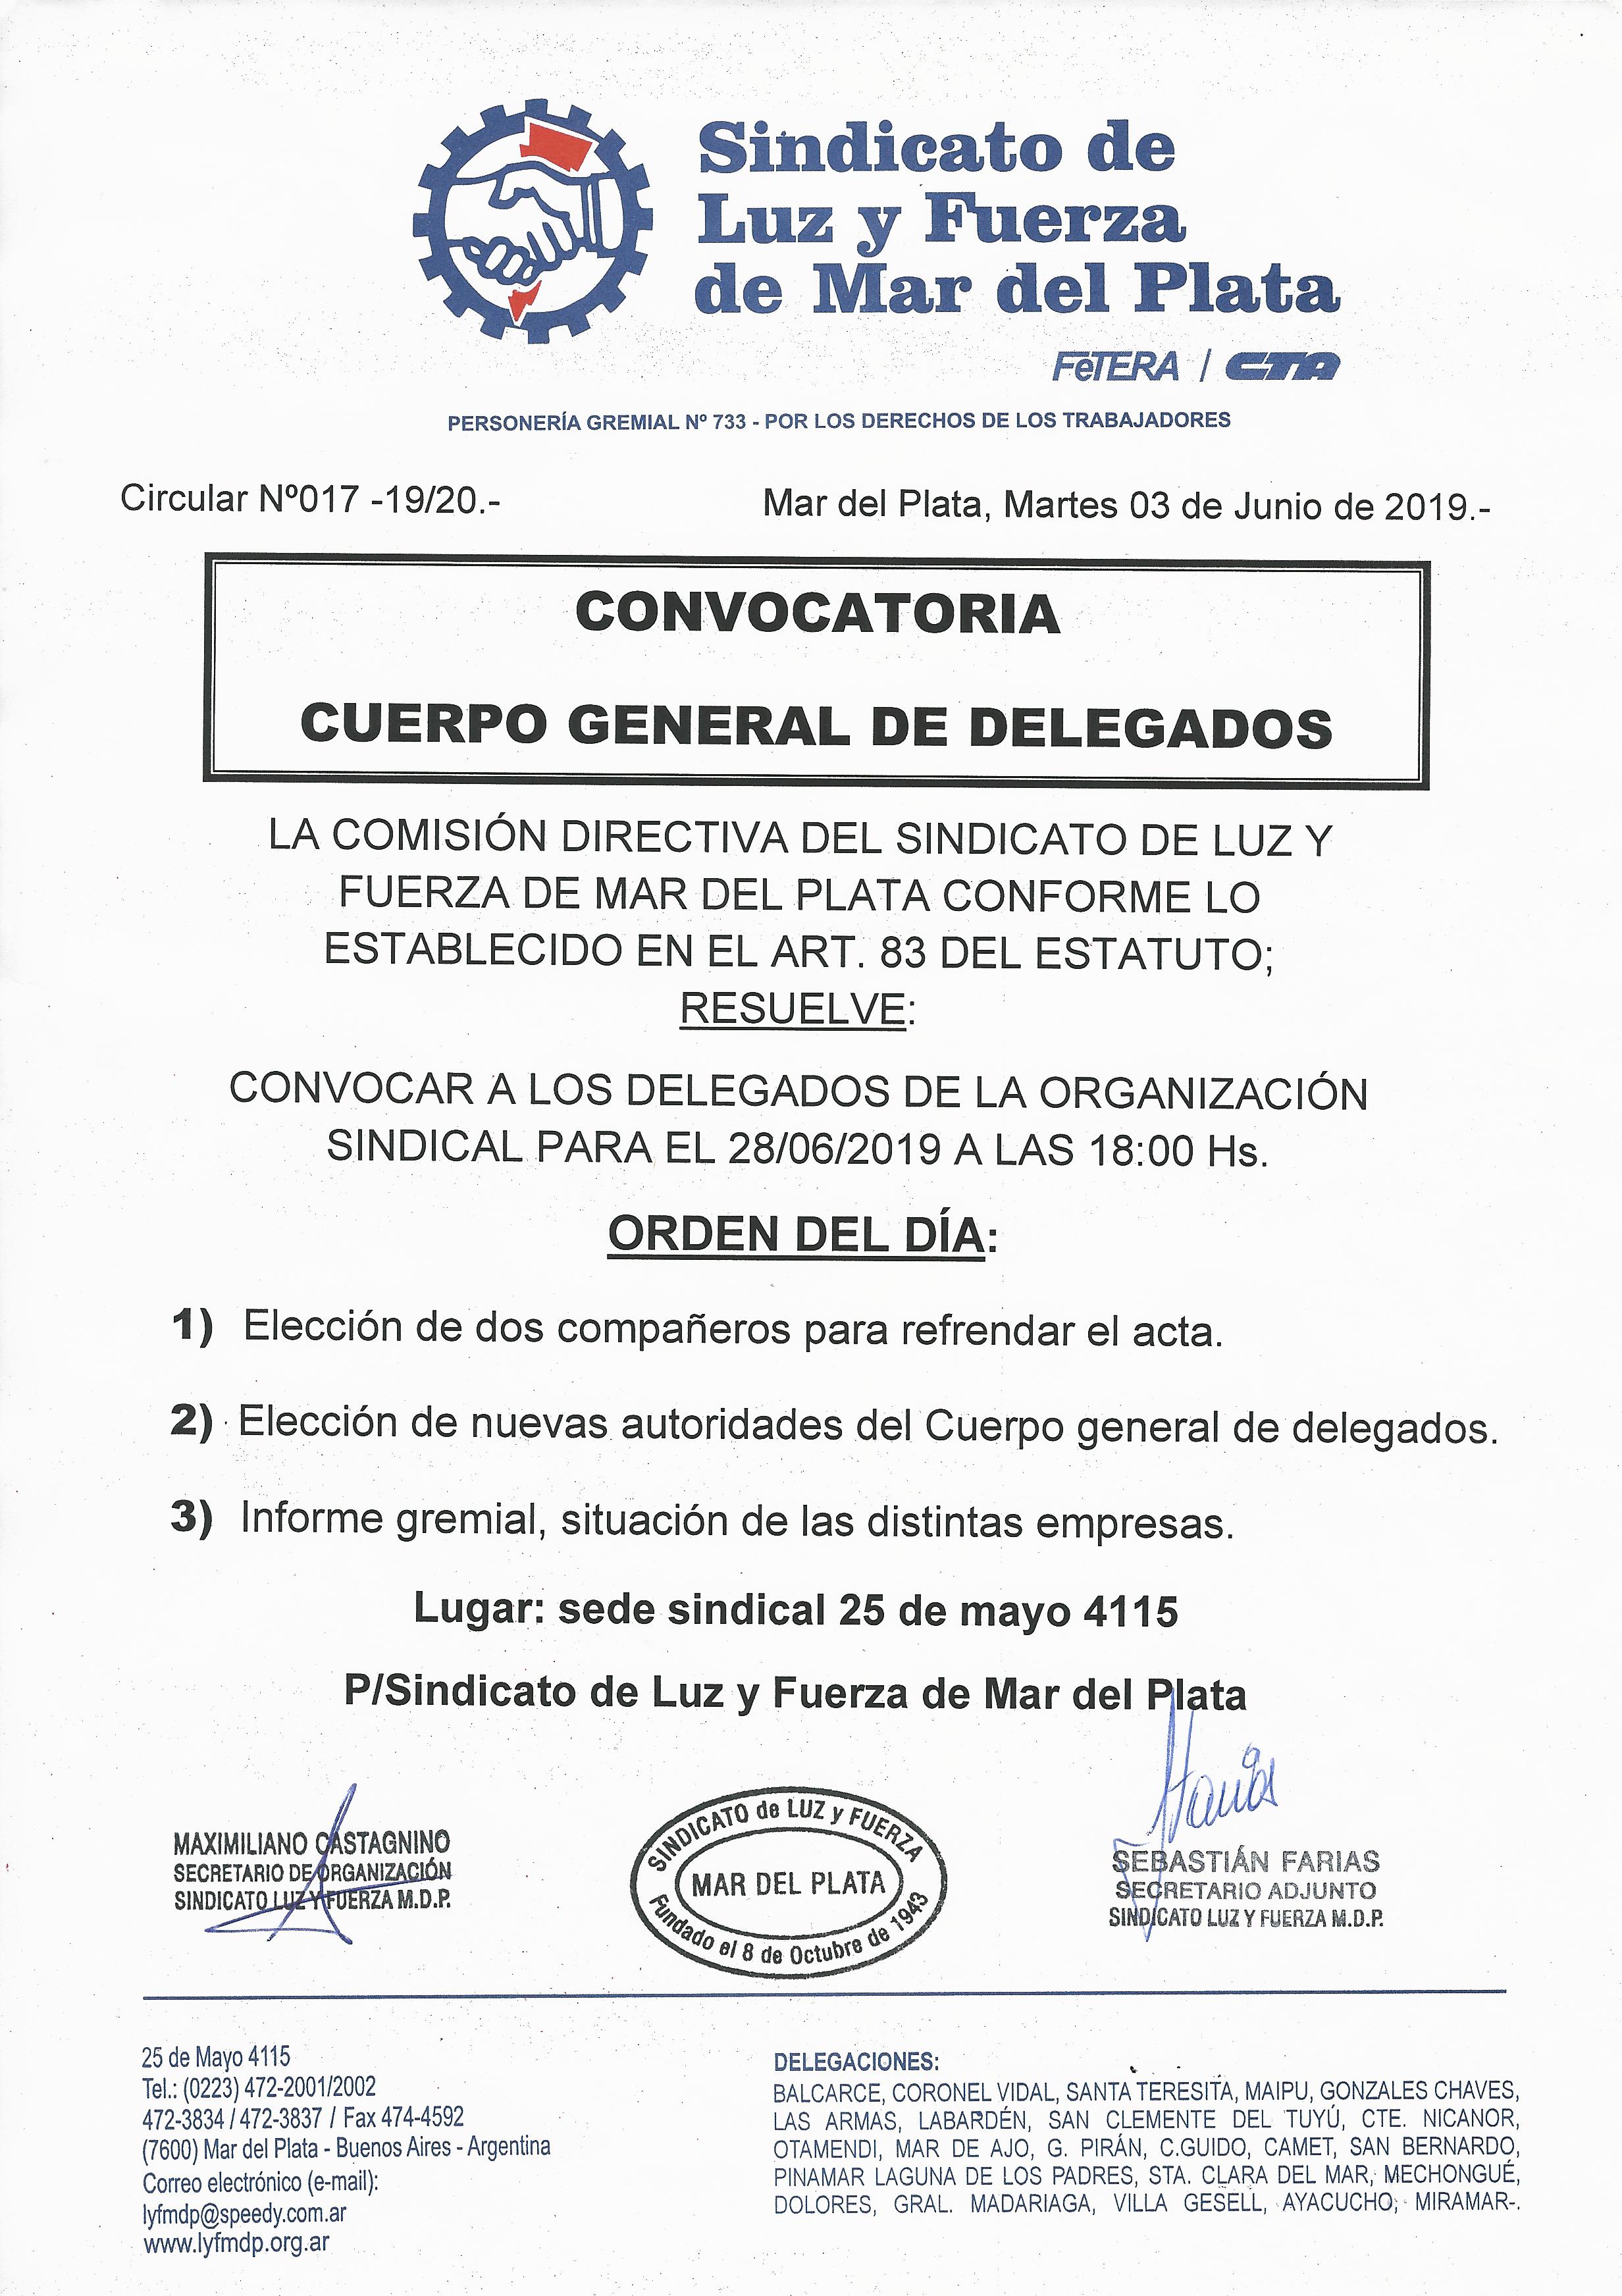 CONVOCATORIA AL CUERPO GENERAL DE DELEGADOS/AS PARA EL 28 DE JUNIO DE 2019